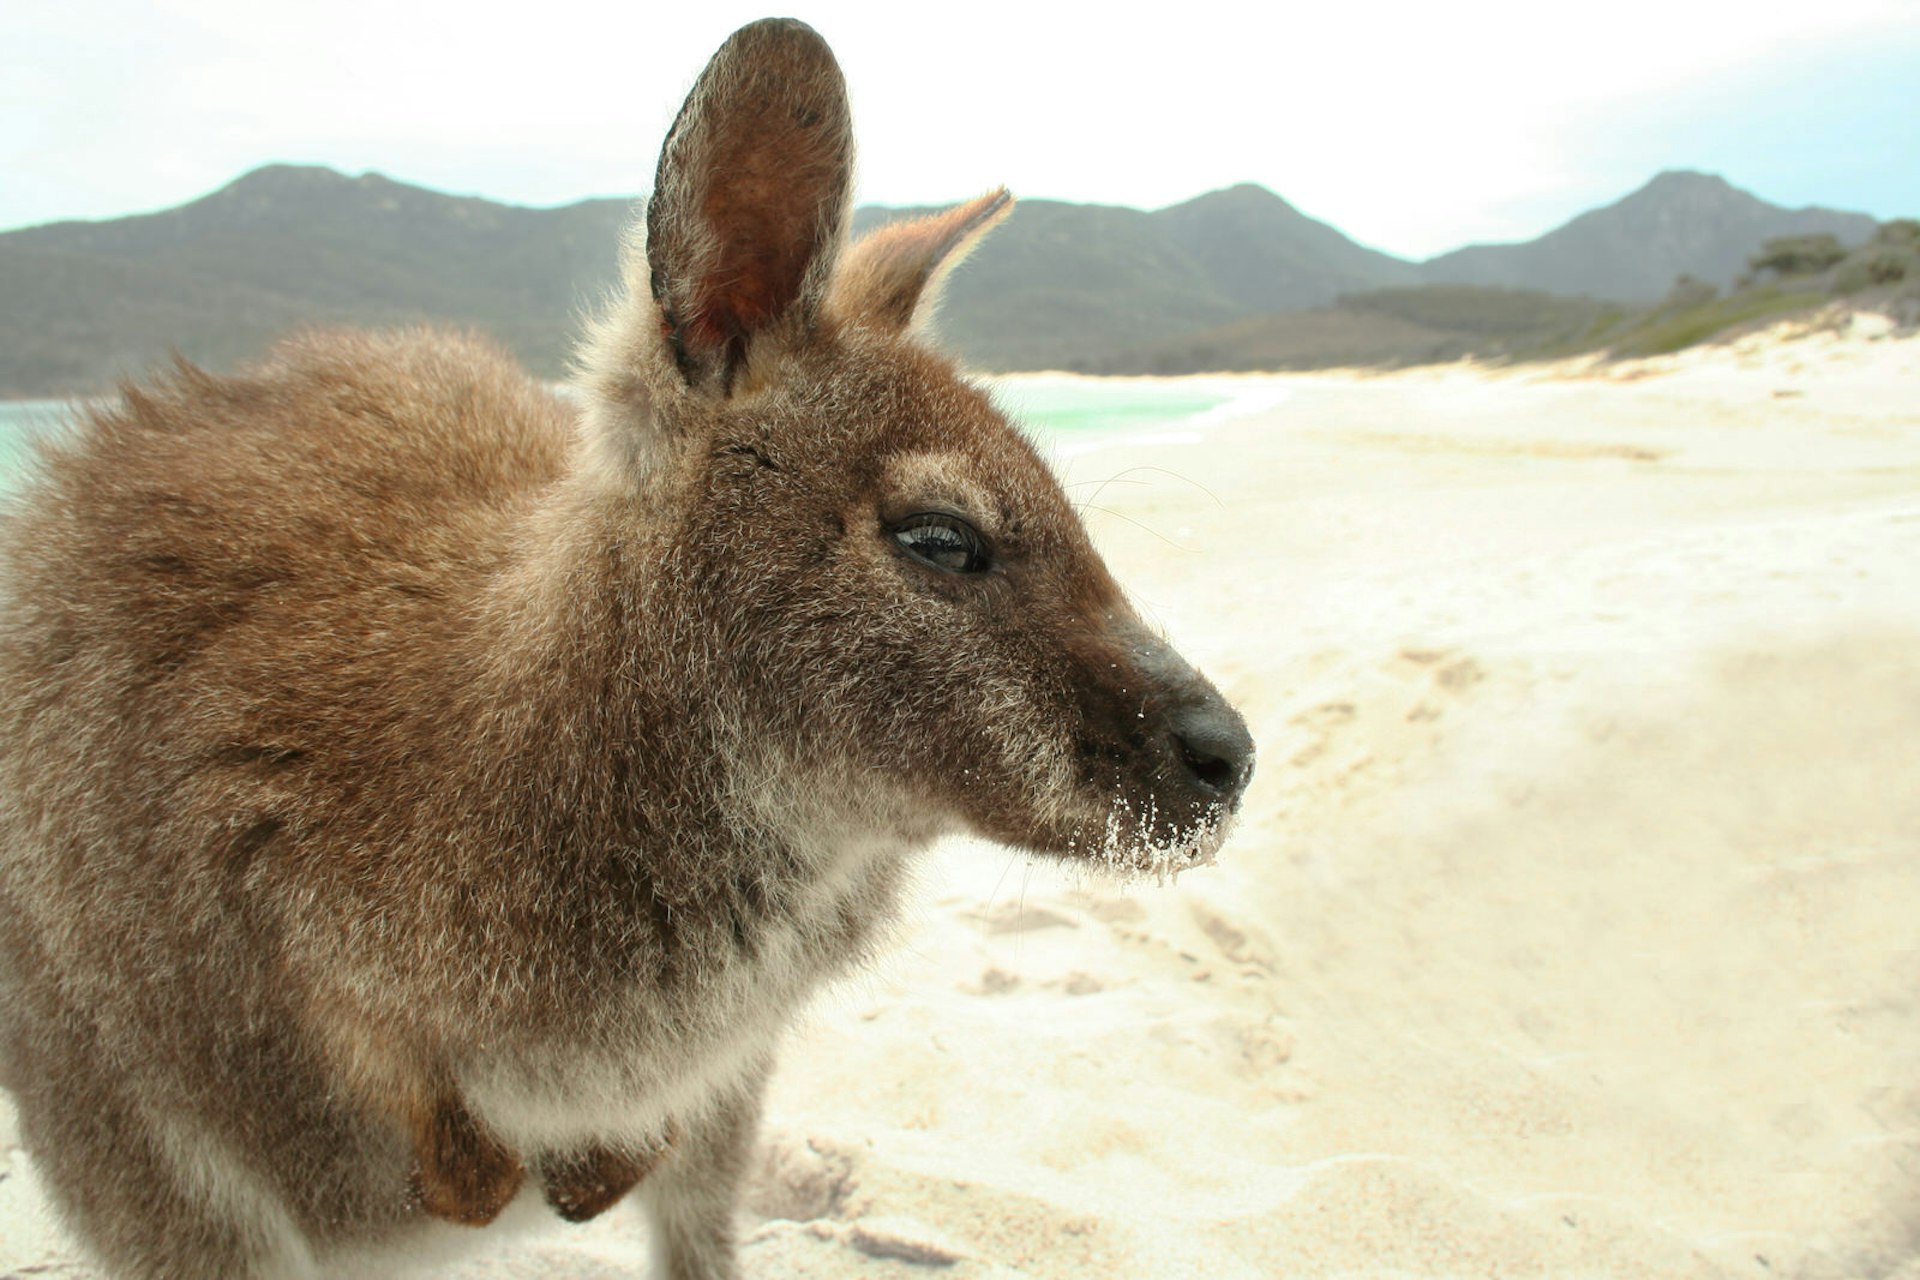 Wallaby on an Aussie beach!